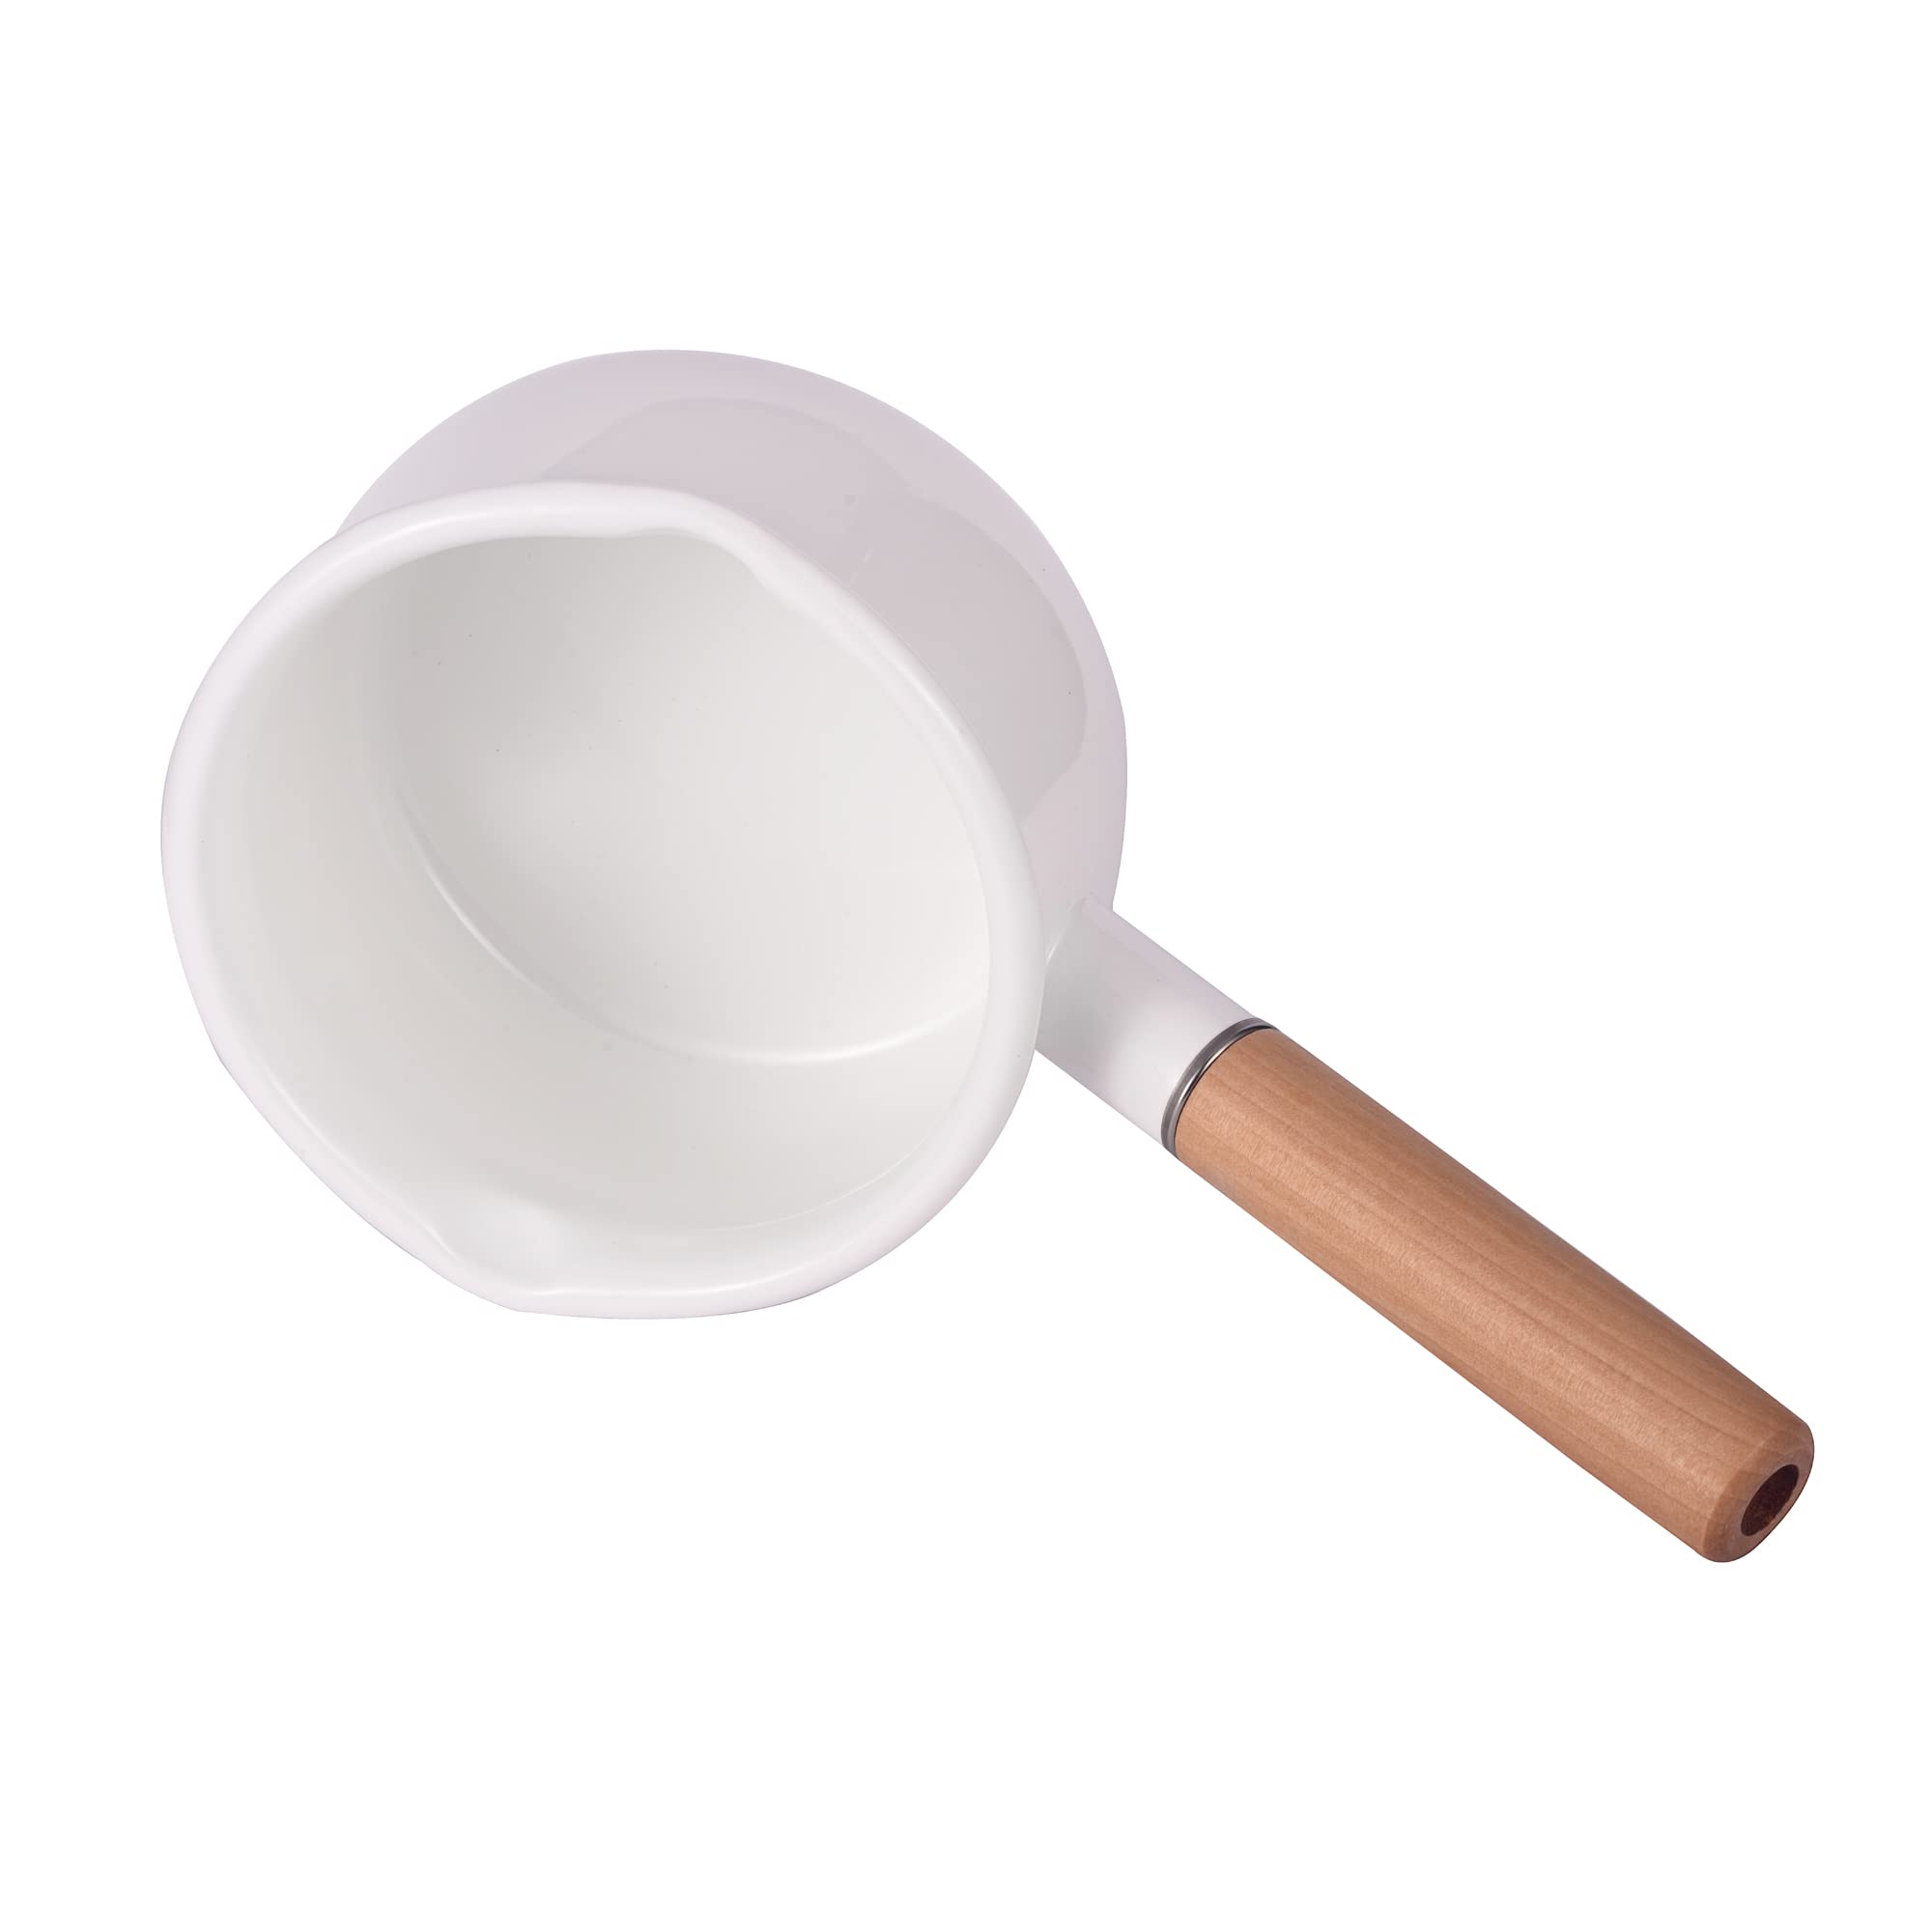 IMEEA Saucepan Enamel Sauce Pan with Dual Pour Spout Enamel Milk Pan Butter Warmer Milk Pot Small Soup Pot Wooden Handle, 1.05 Quart